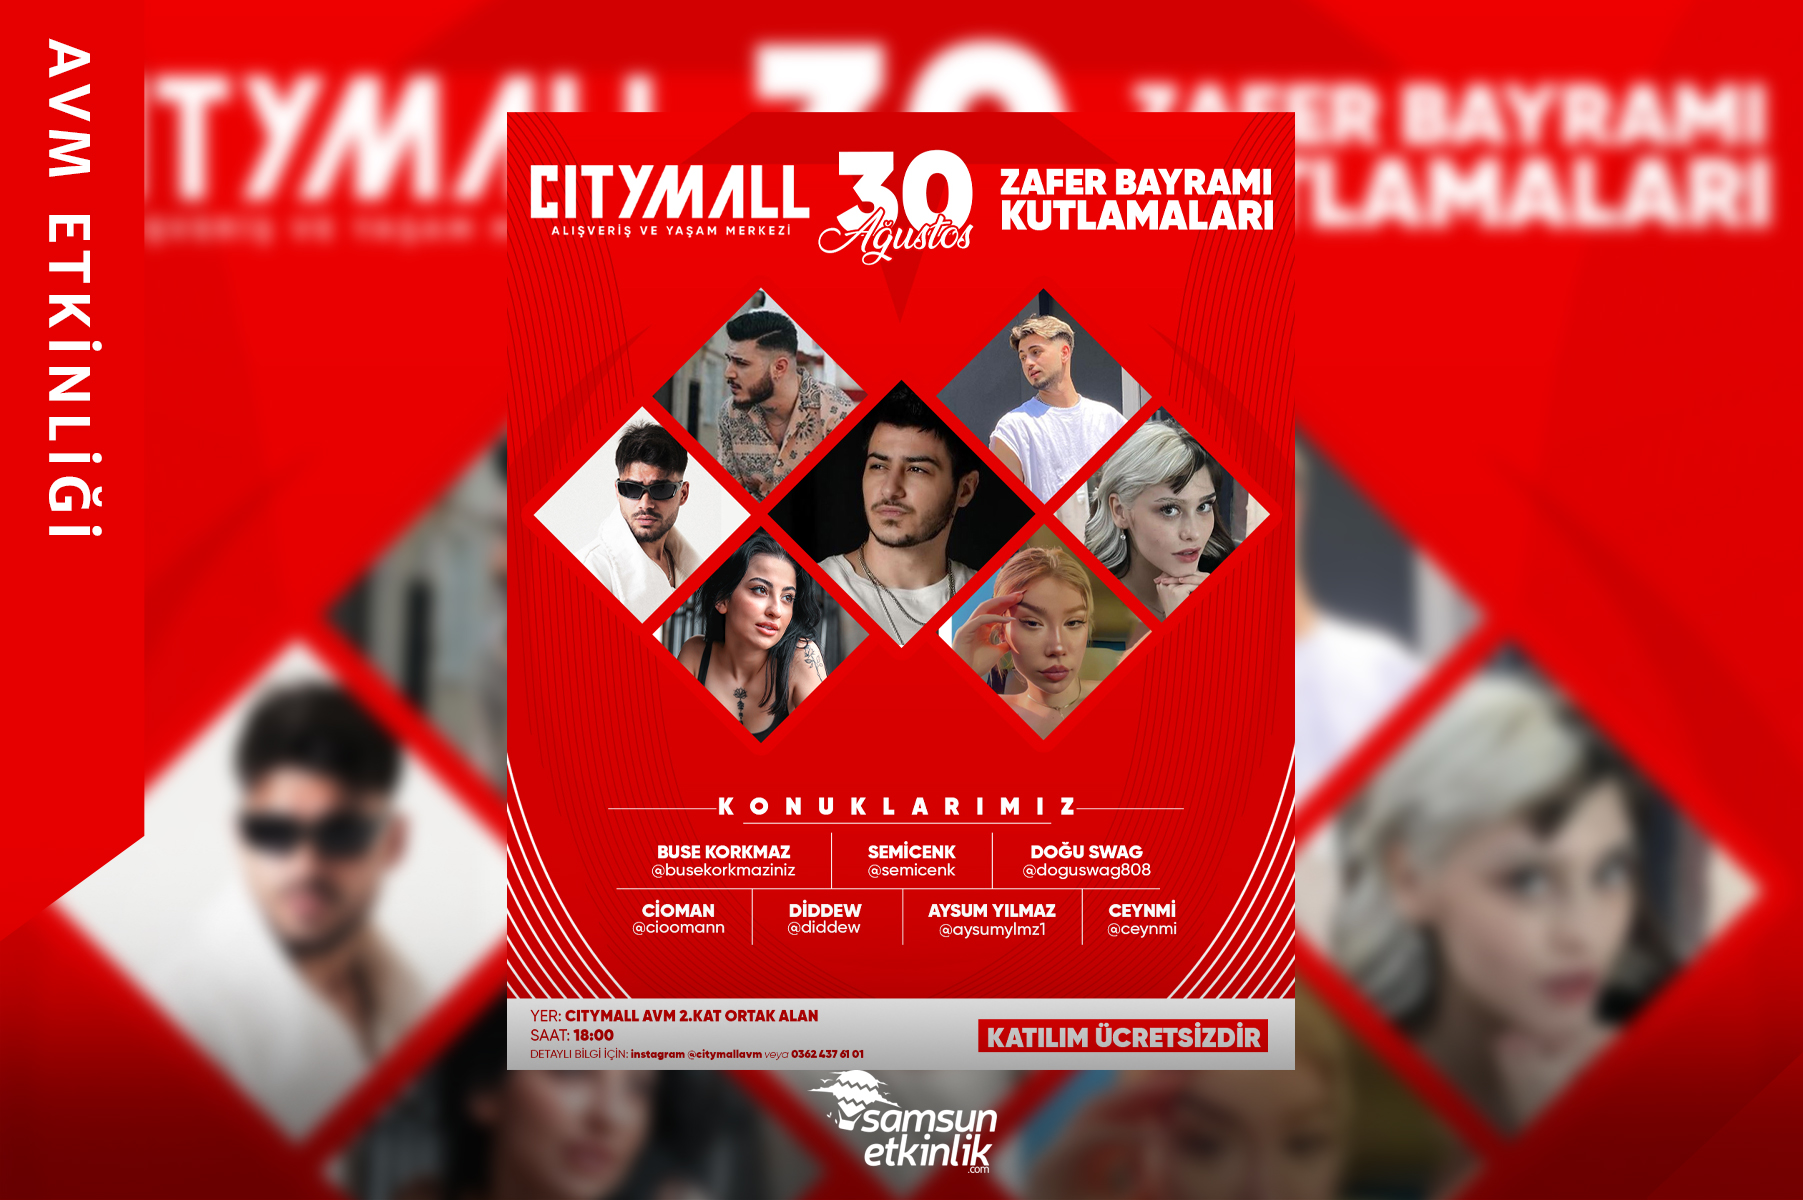 30 Ağustos Zafer Bayramı Coşkusu Citymall AVM’de!